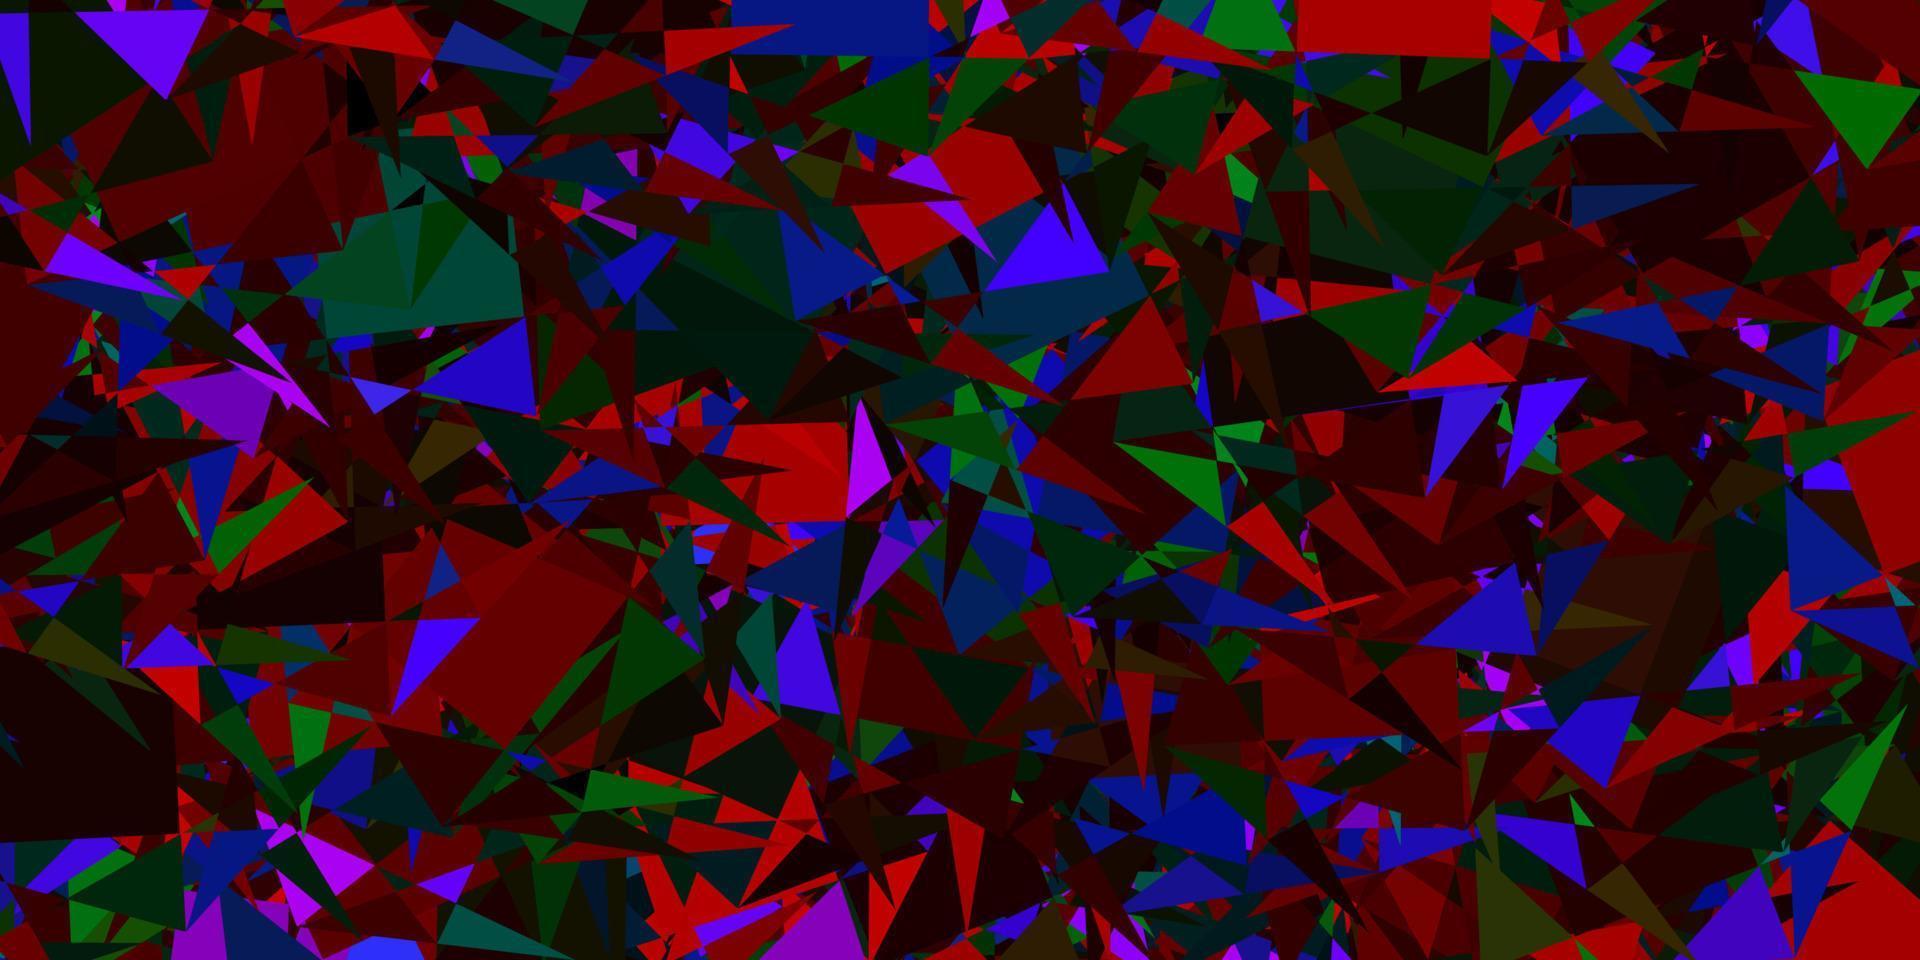 trama vettoriale multicolore scuro con triangoli casuali.